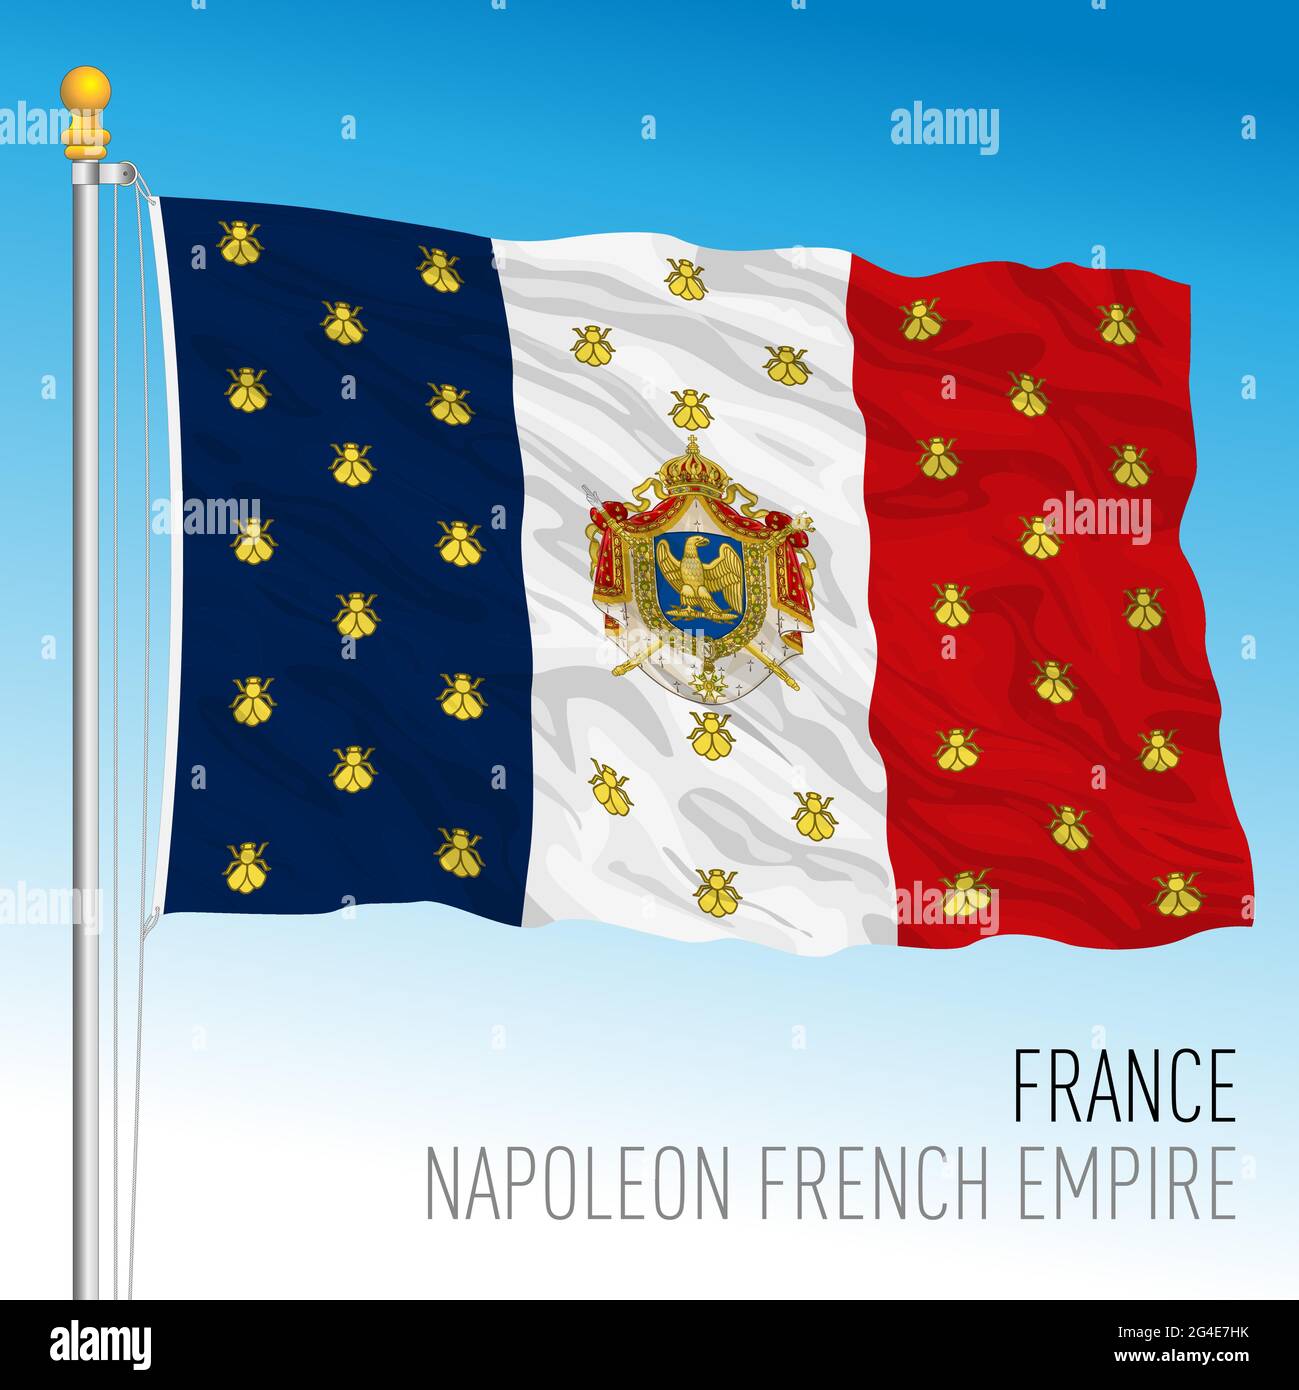 Napoleon Bonaparte Flagge des Französischen Reiches, Frankreich, historisches Emblem, Vektorgrafik Stock Vektor